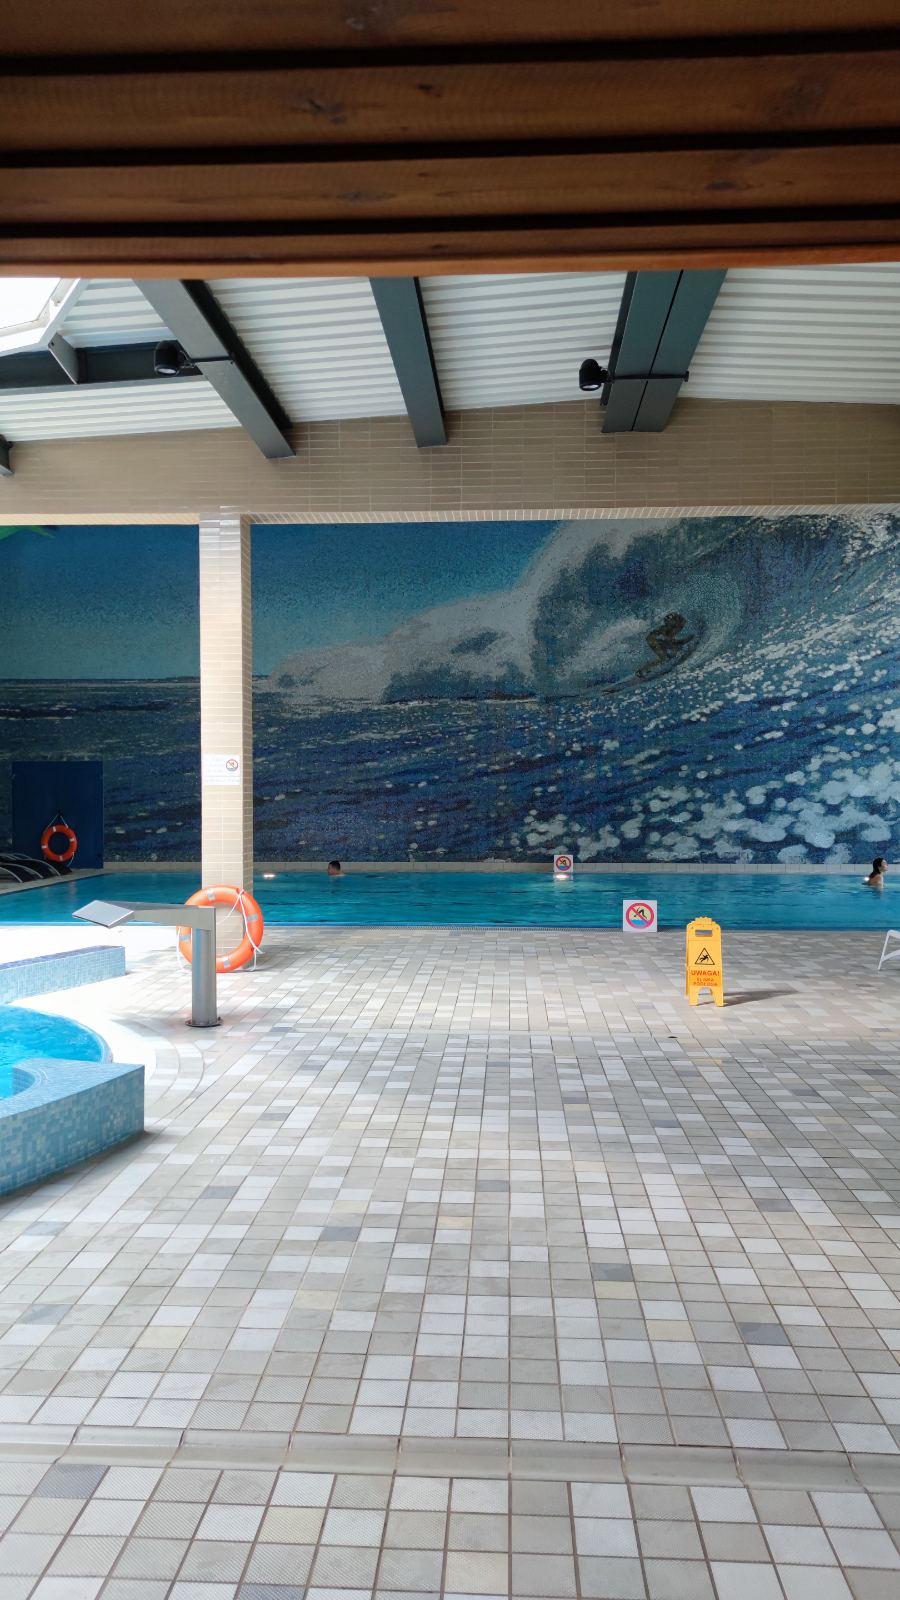 Panel mozaikowy na ścianie, w basenie